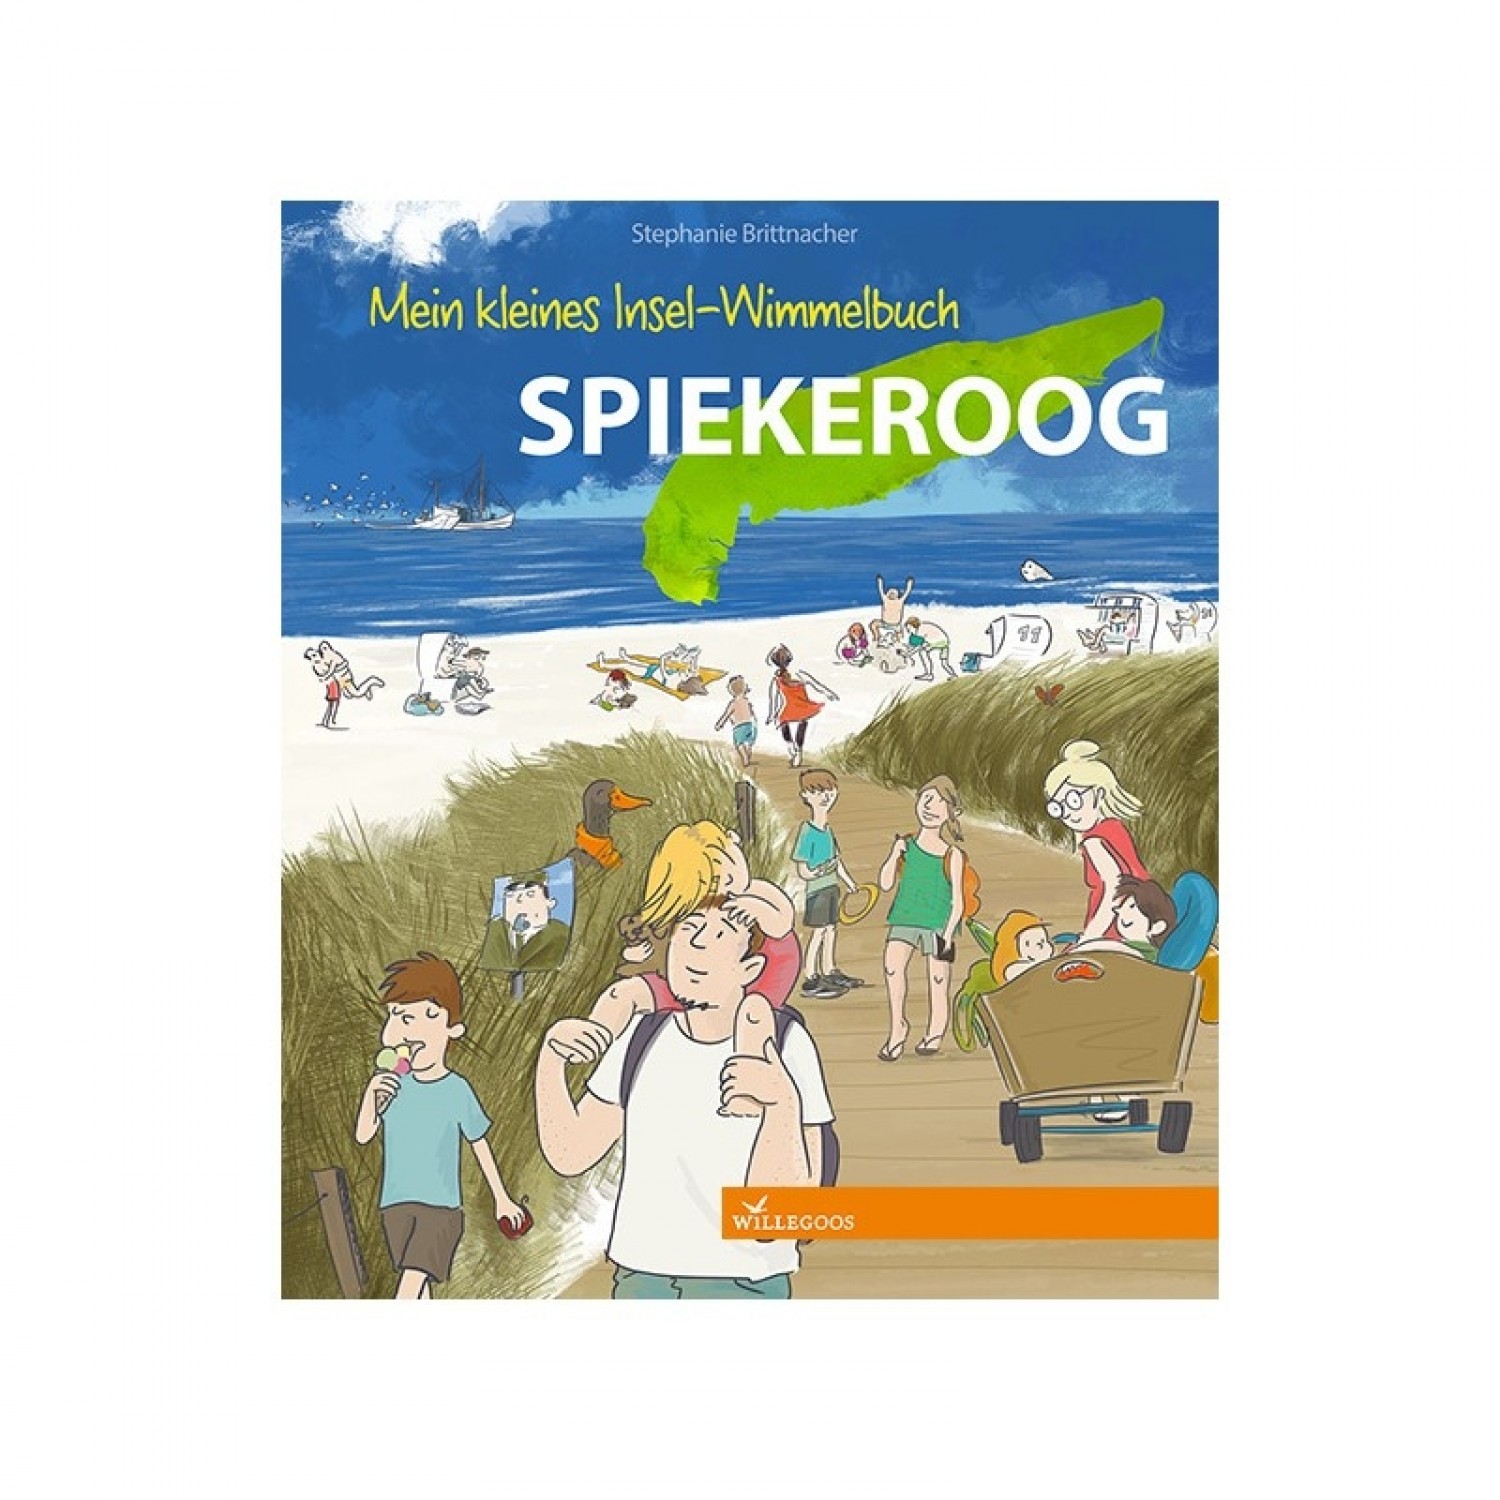 Discover Island Spiekeroog - children’s picture book | Willegoos